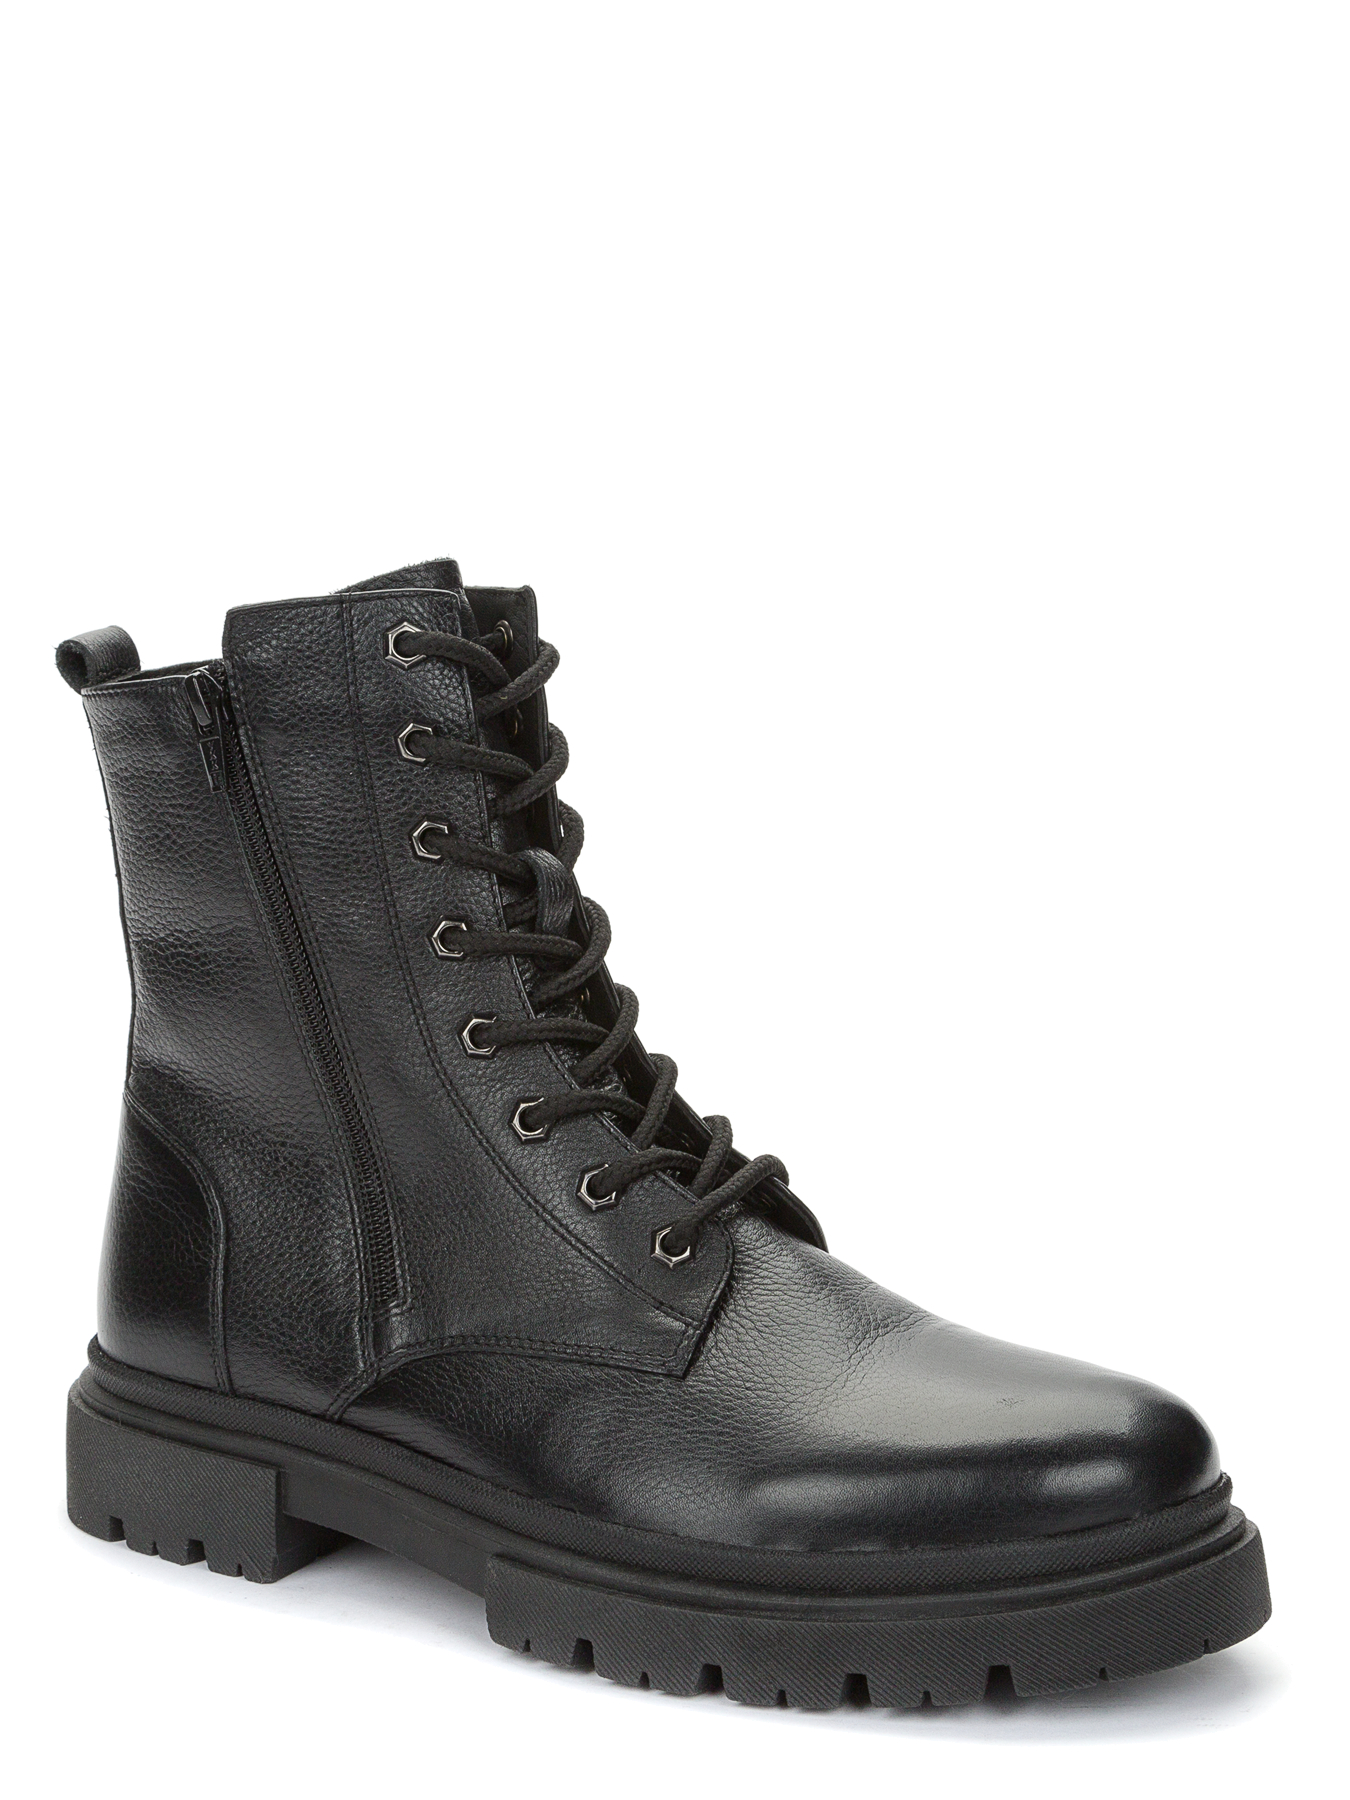 Ботинки мужские Keddo 738010-02-01 черные 45 EU